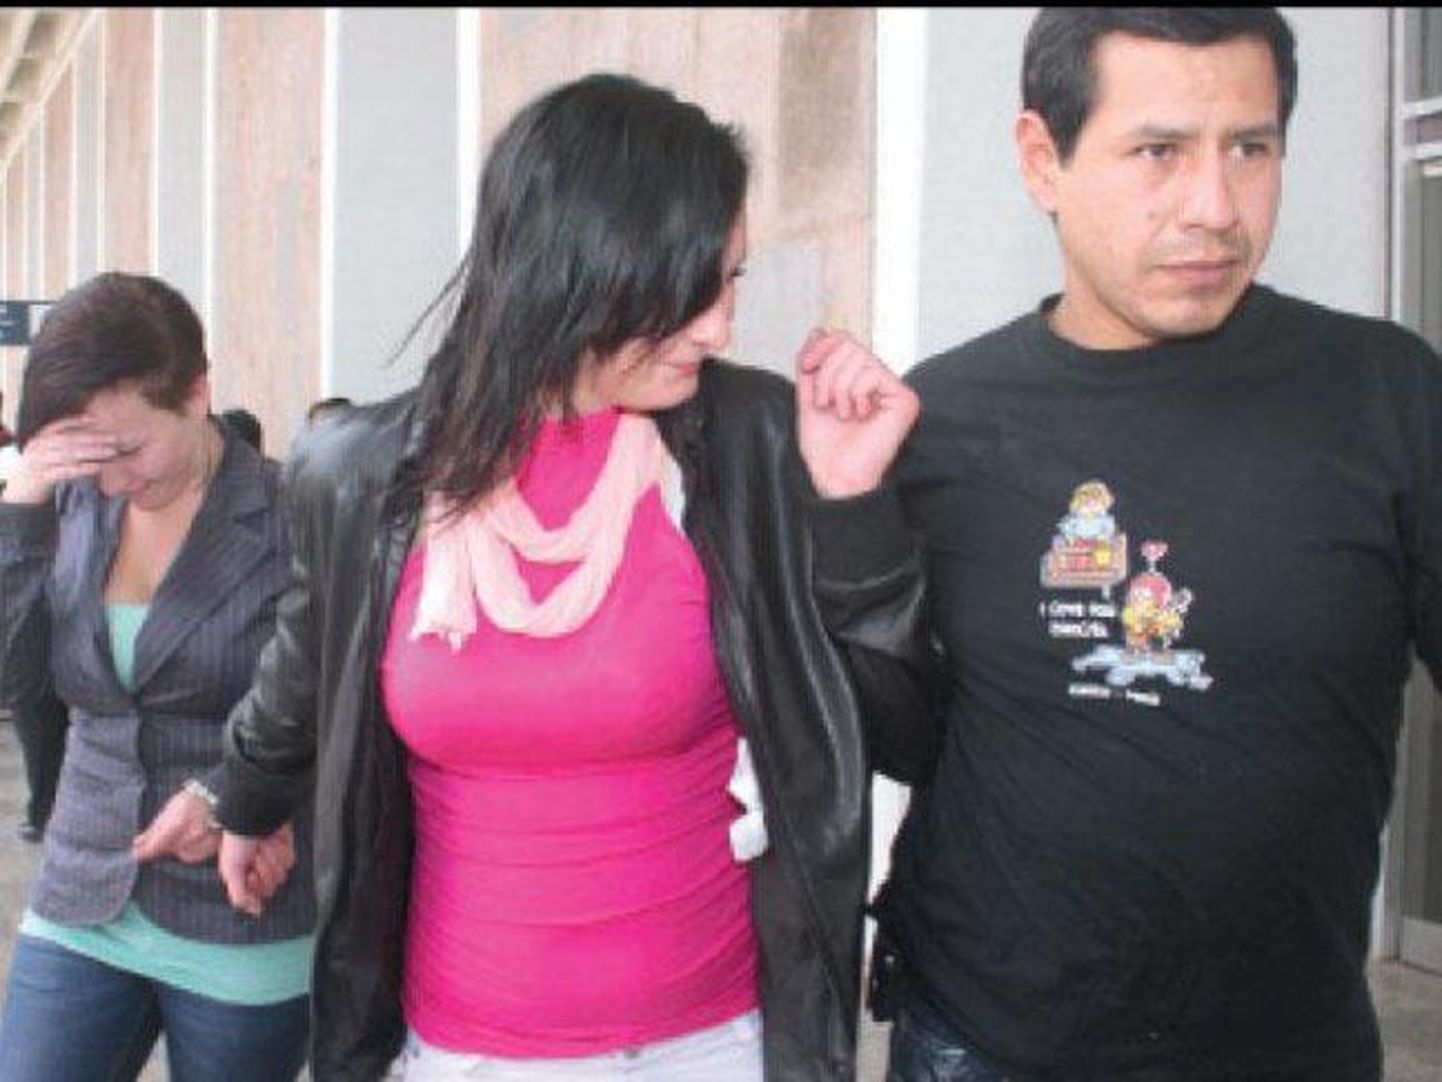 Oktoobris 2013 tabati Peruus kaks eestlannat, tollal 19-aastane Anneli Kolk ja 22-aastane Anne-Maarja Gross, kes üritasid reisikohvriga lennukisse kuus kilo kokaiini smugeldada.